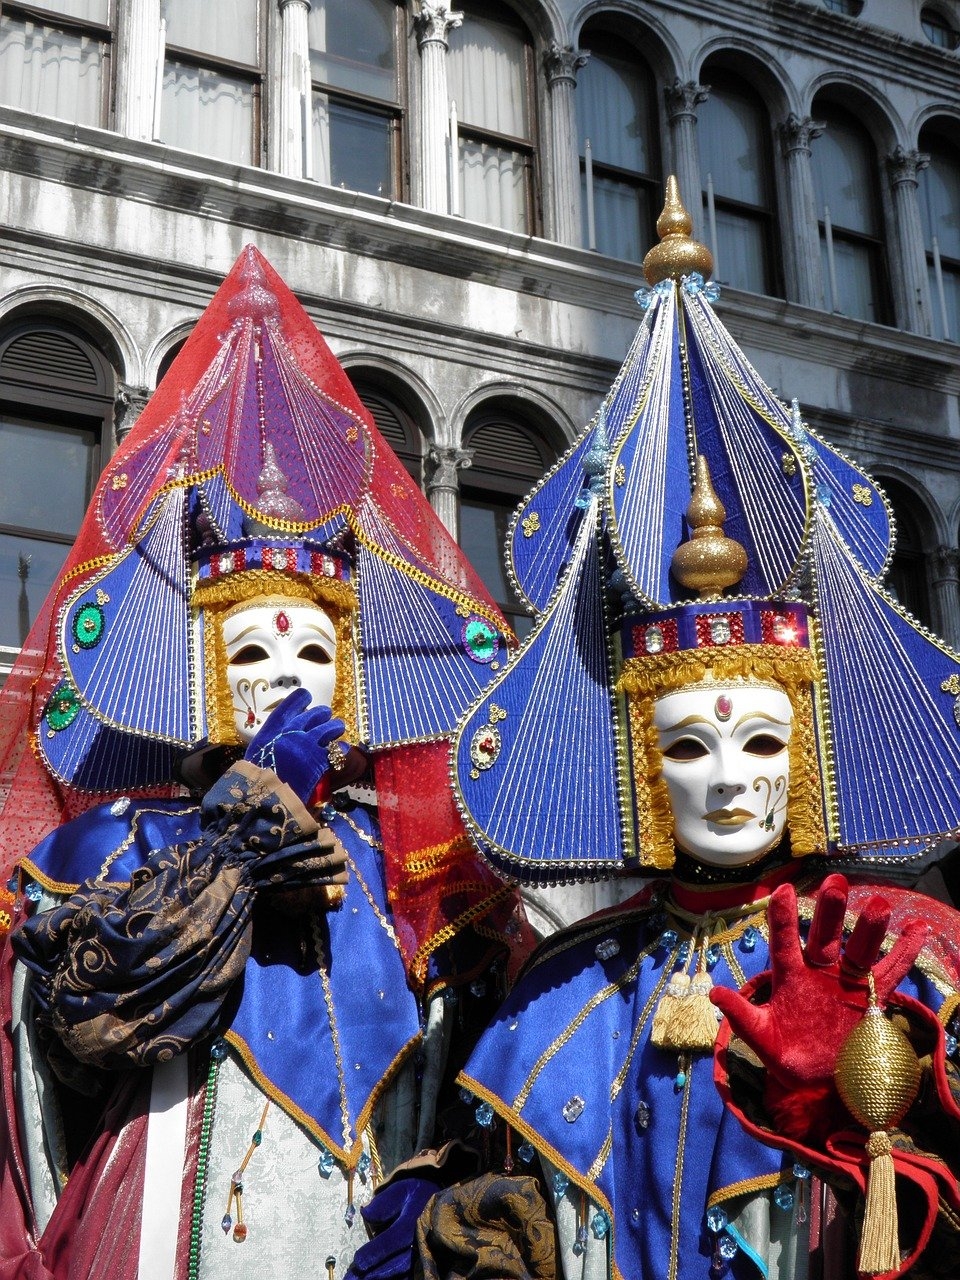 Veneza é famosa, além dos canais, da arquitetura e da arte, pelo carnaval de máscaras que influencia muitos lugares no mundo.  Reprodução: Flipar